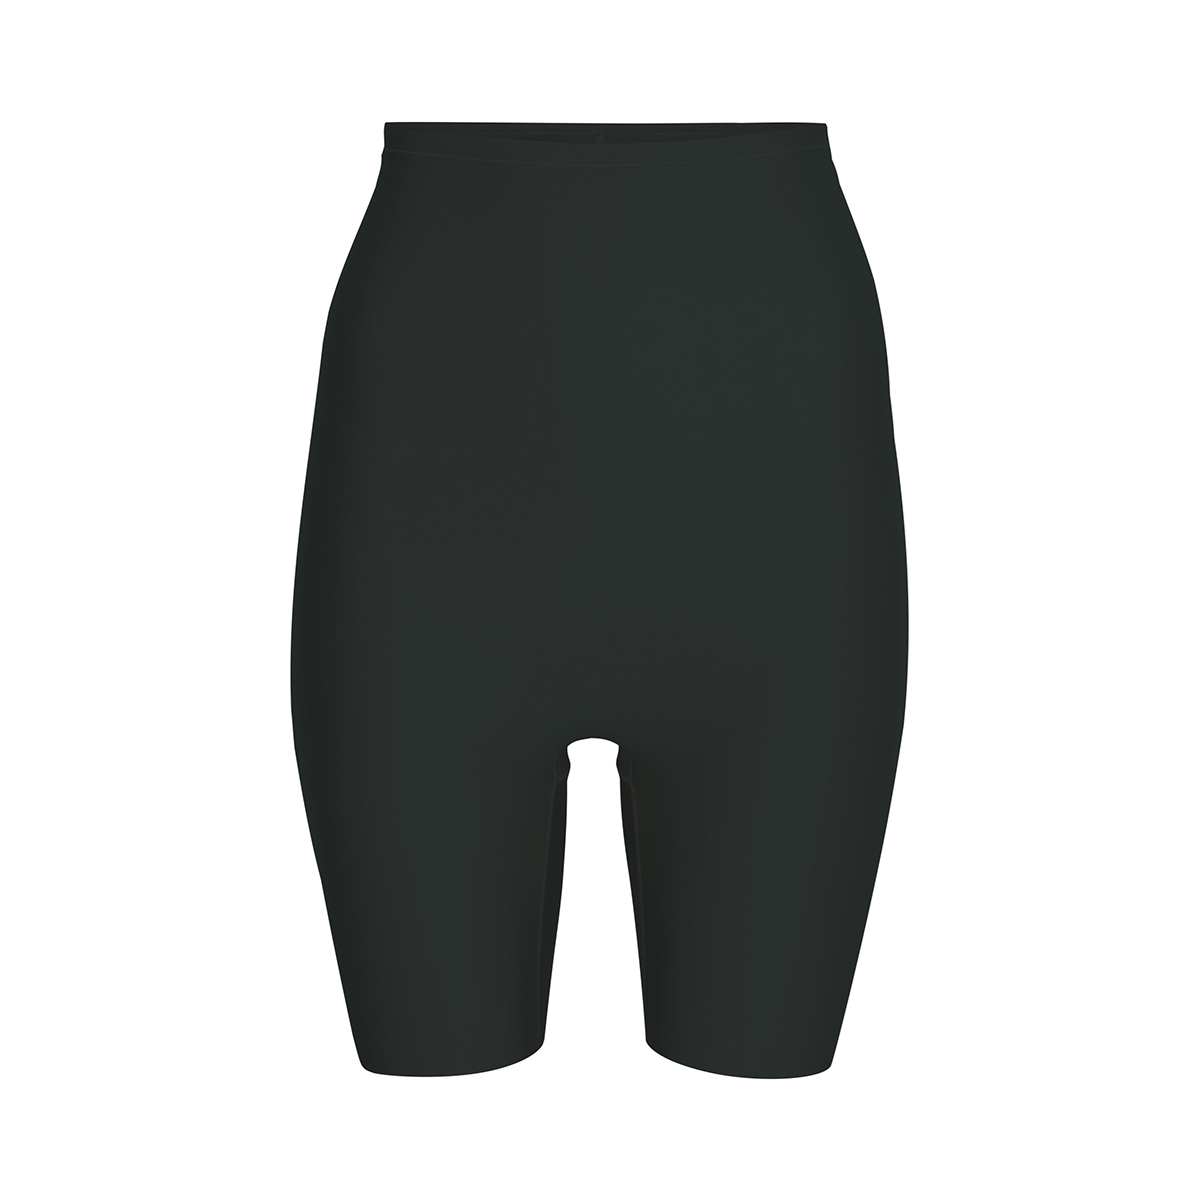 Decoy Shapewear Shorts, Farve: Sort, Størrelse: L, Dame